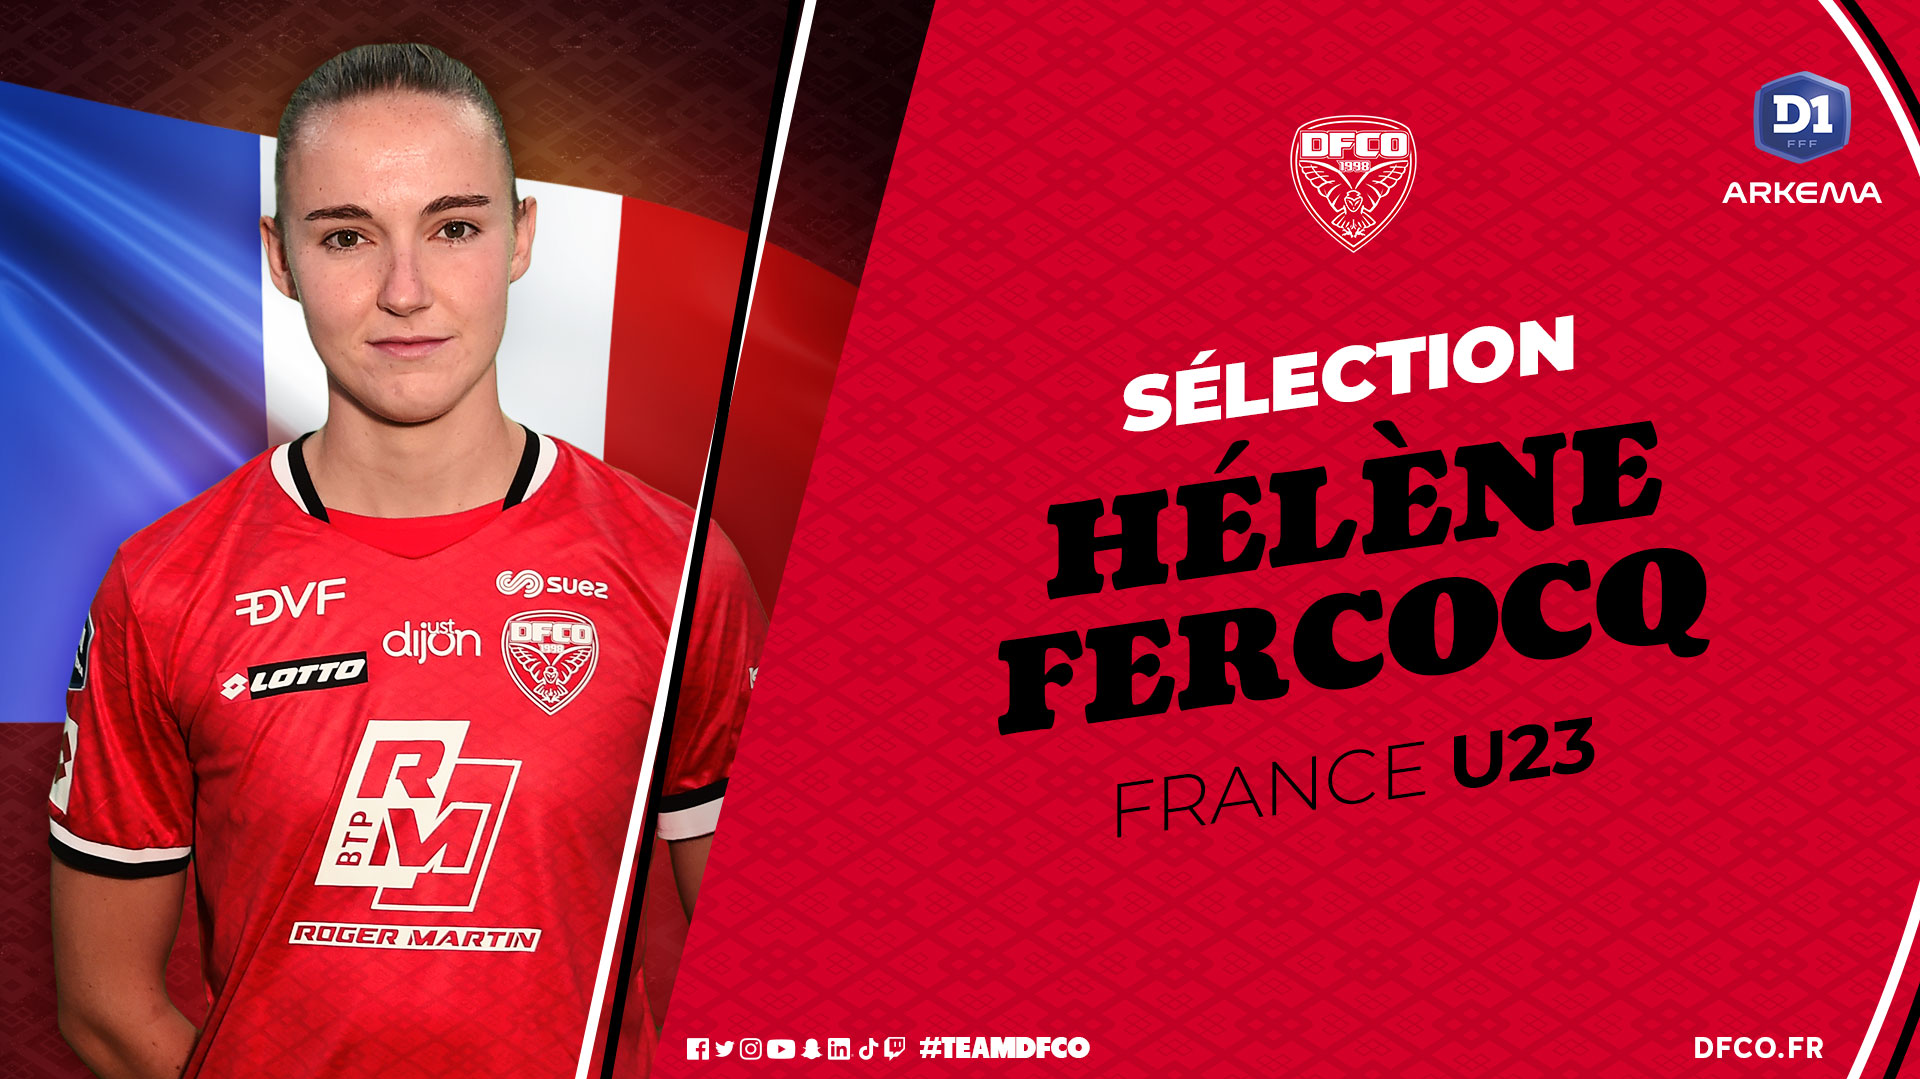 Hélène Fercocq en équipe de France U23 !